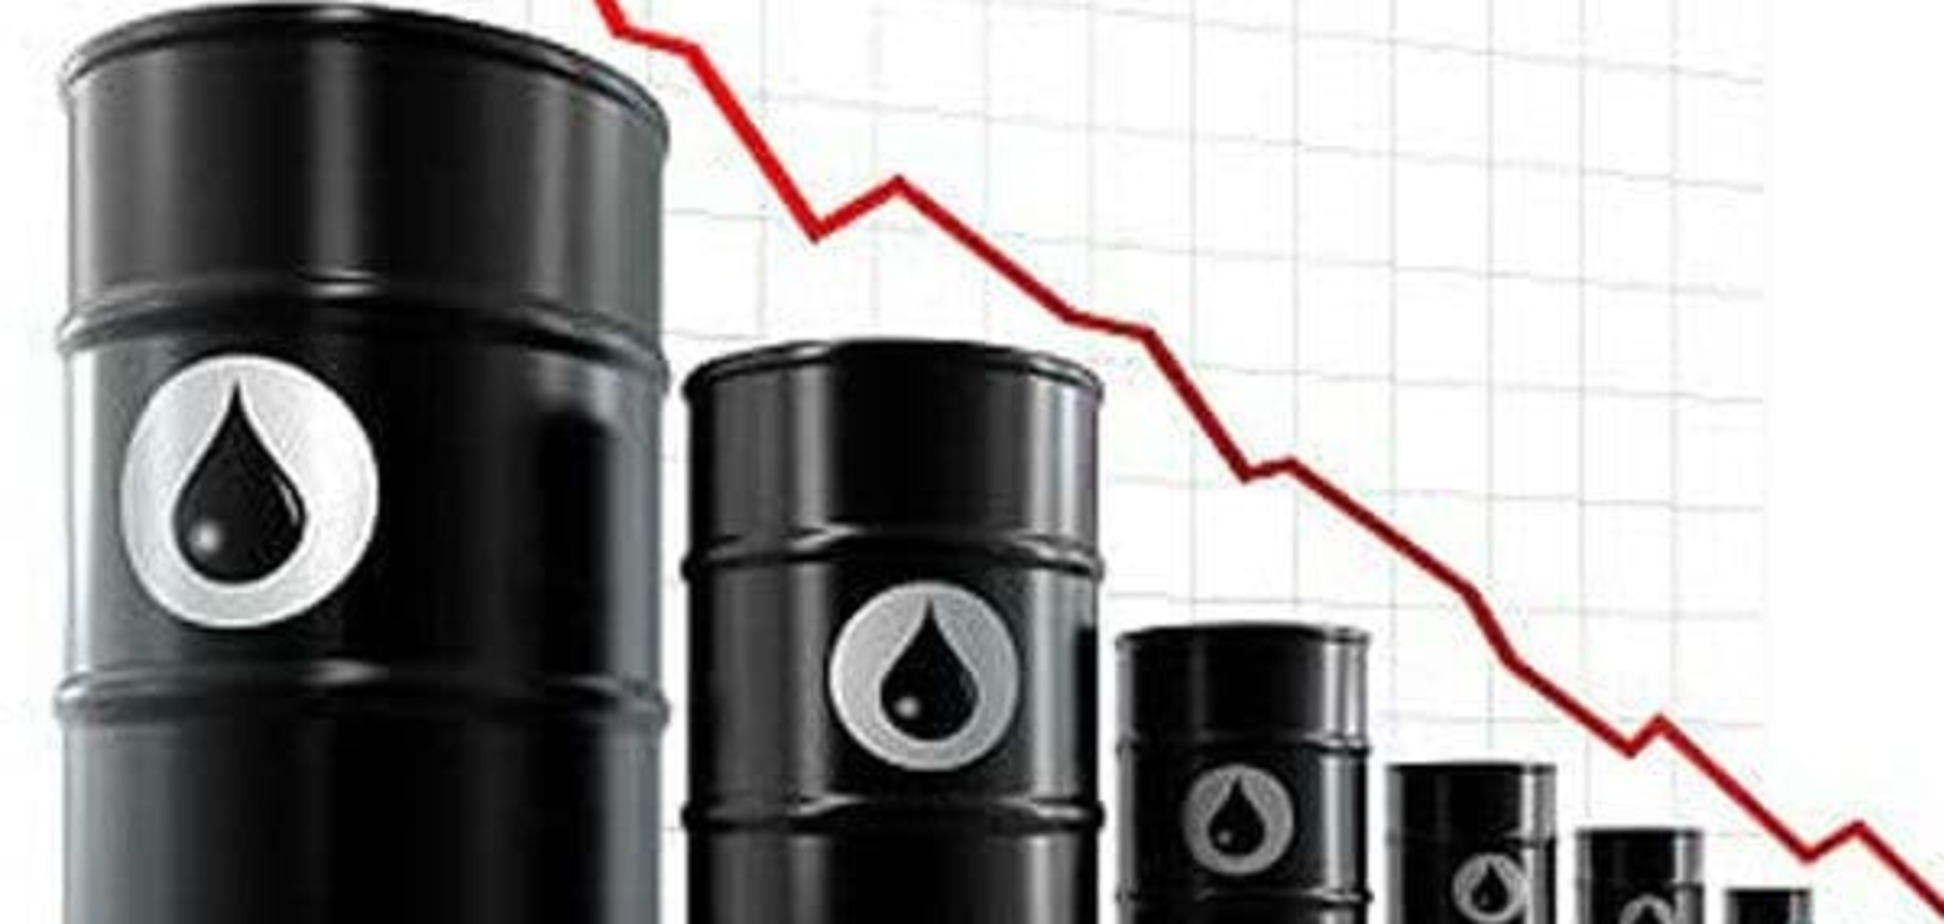 Цена на нефть достигла дна и начала копать - эксперт